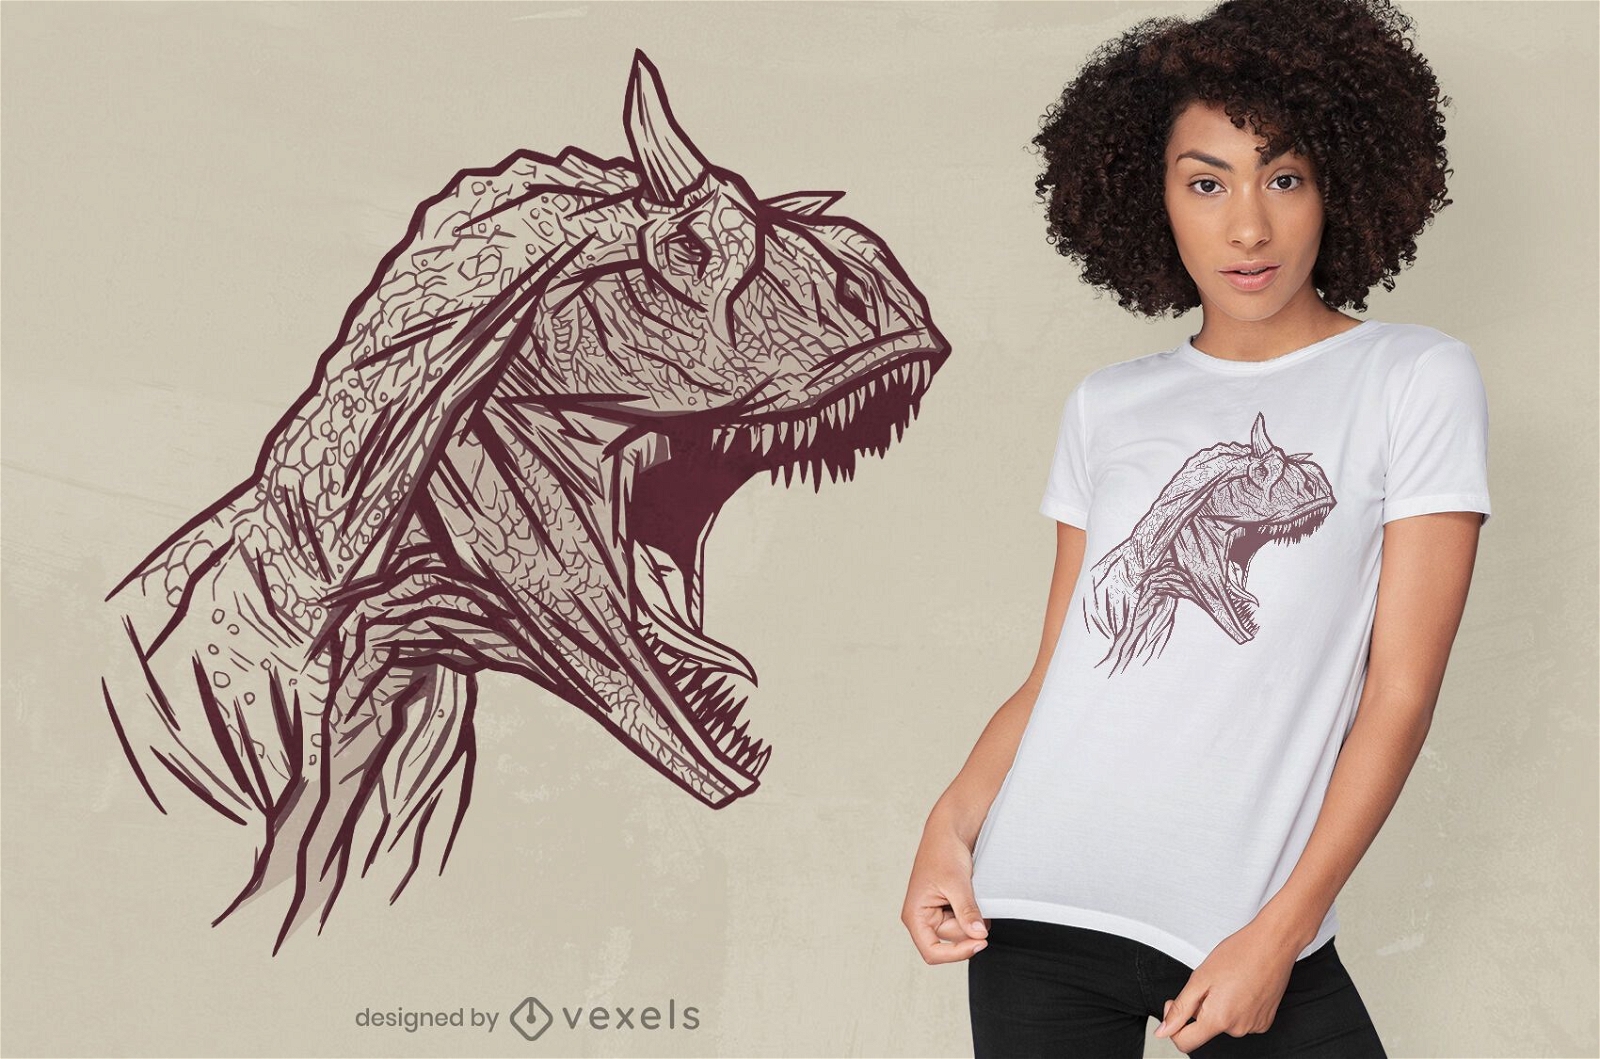 Diseño de camiseta con cara de dinosaurio carnotaurus.